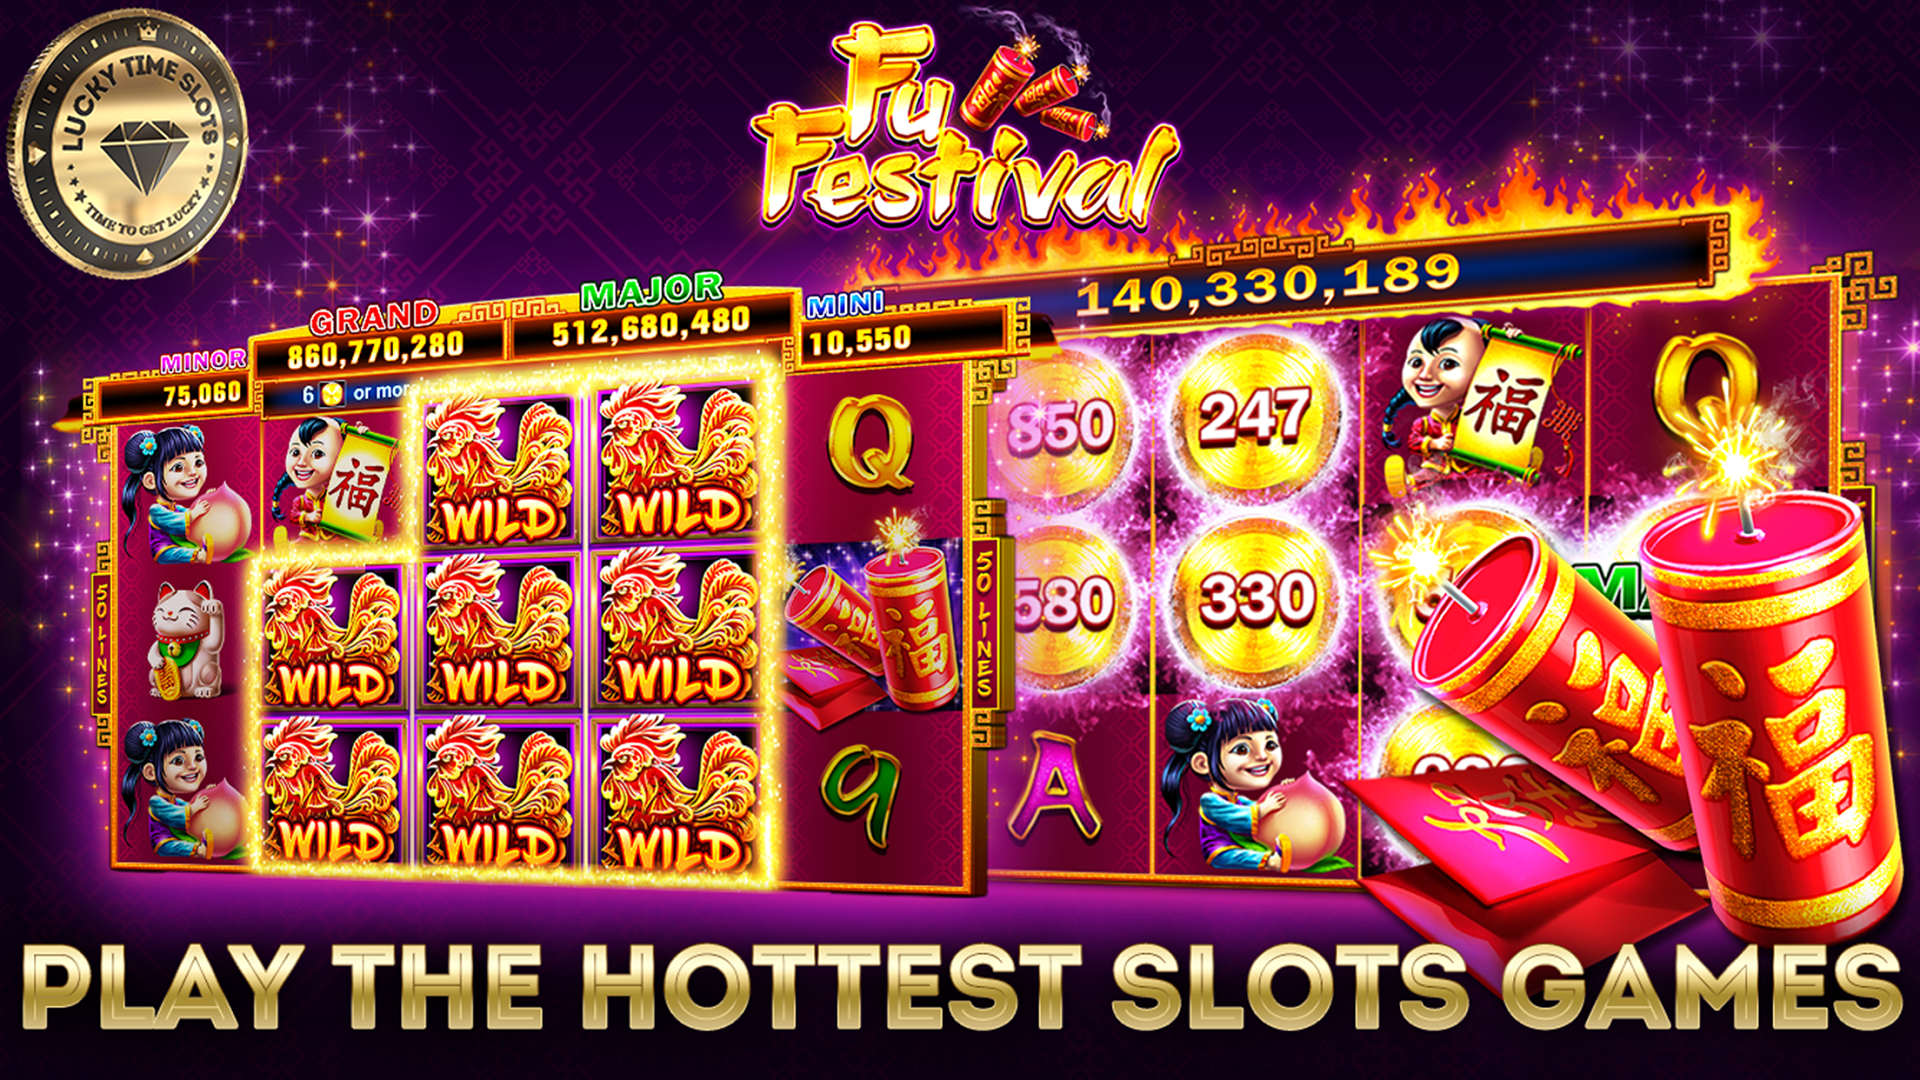 Casino Vegas Slots Free Download